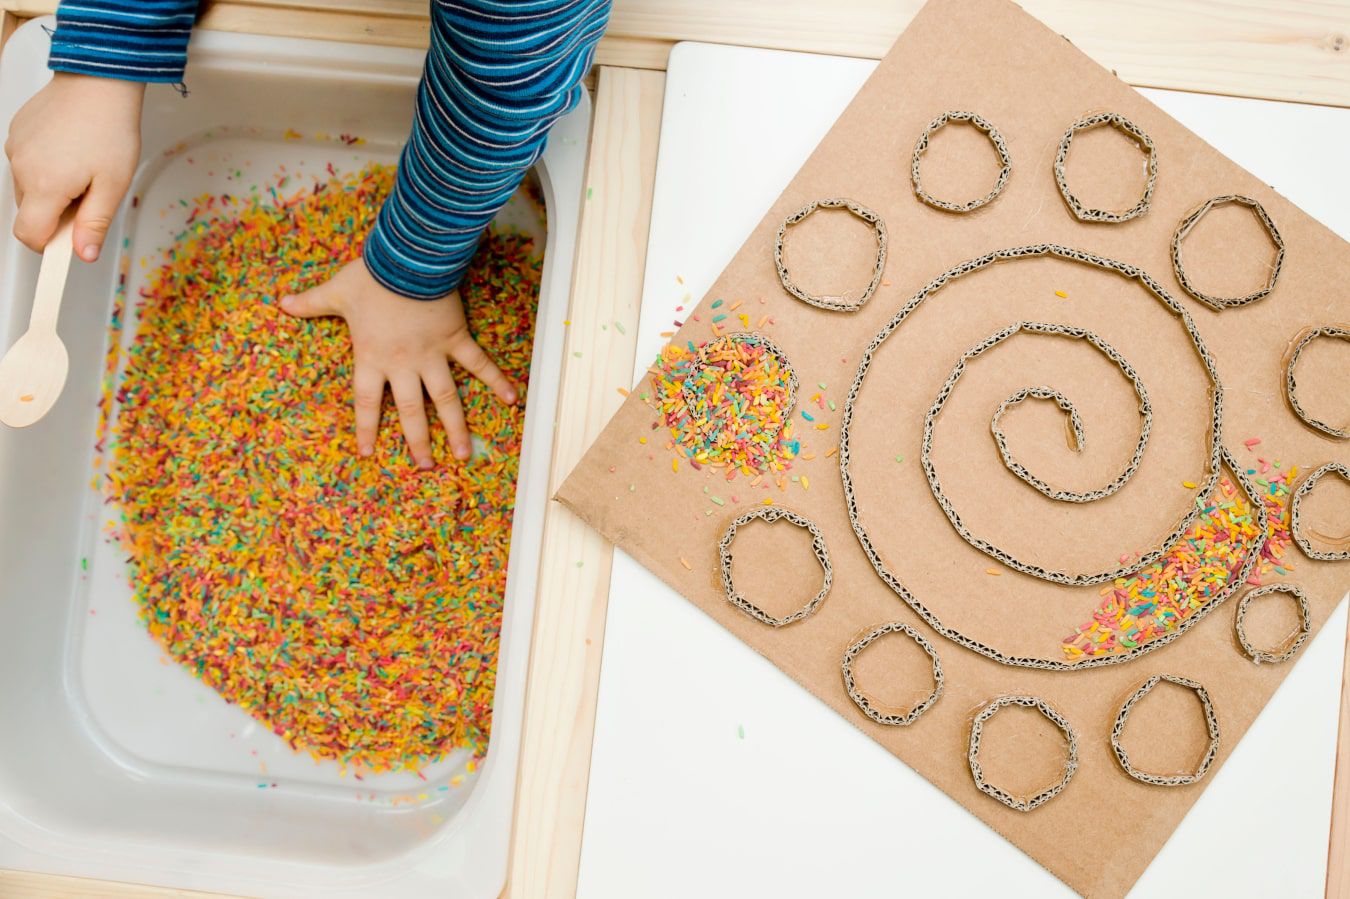 Kinderhände lernen eine neue Textur kennen – bunte Bonbons und Streusel, daneben befindet sich ein DIY-Labyrinth aus Karton